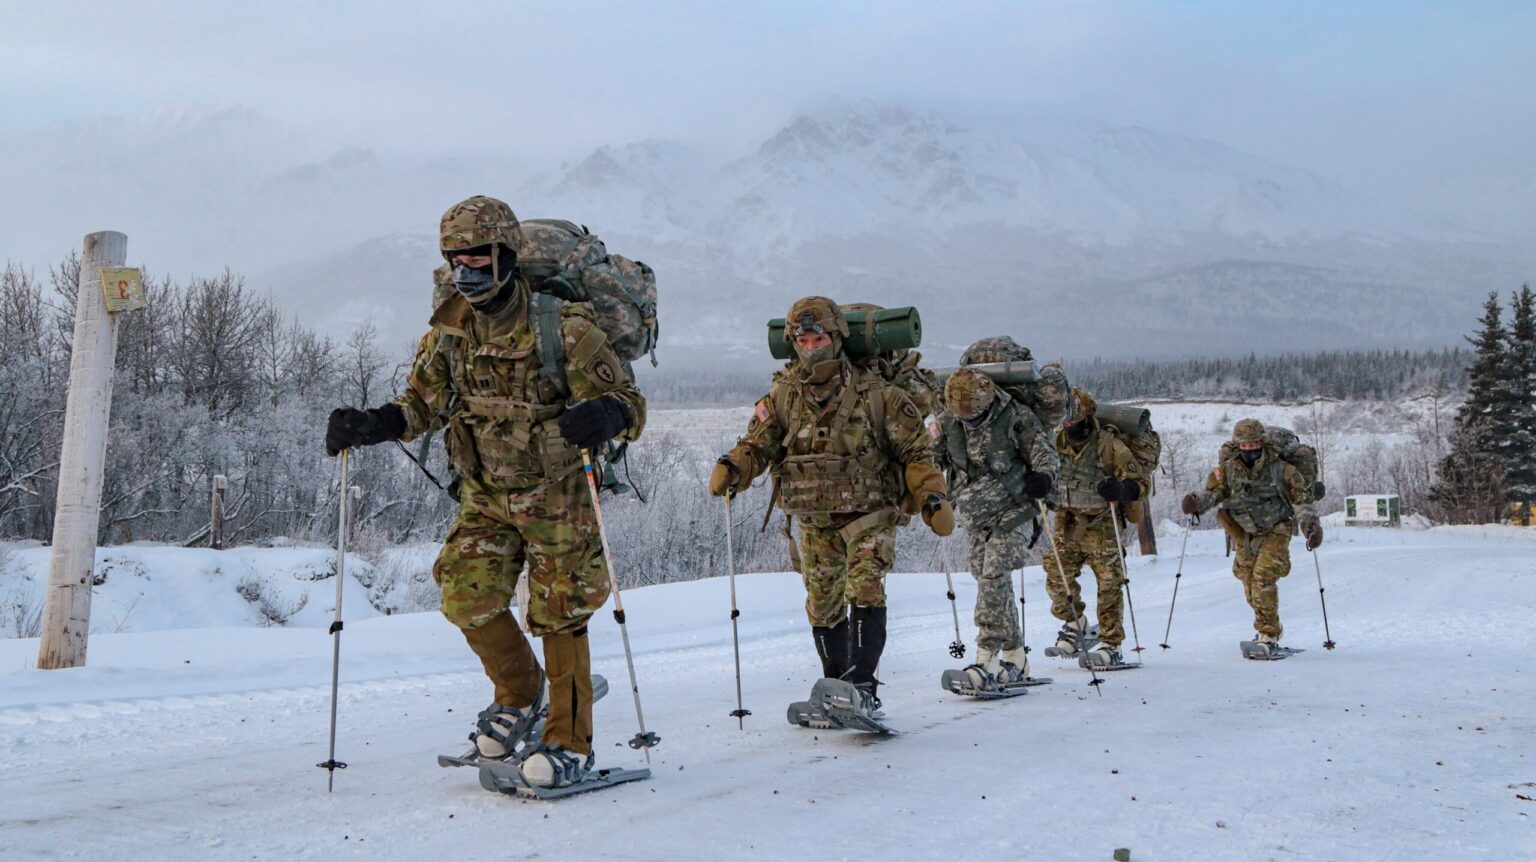 ski-soldiers-scaled-e1697116282618-1536x862.jpeg